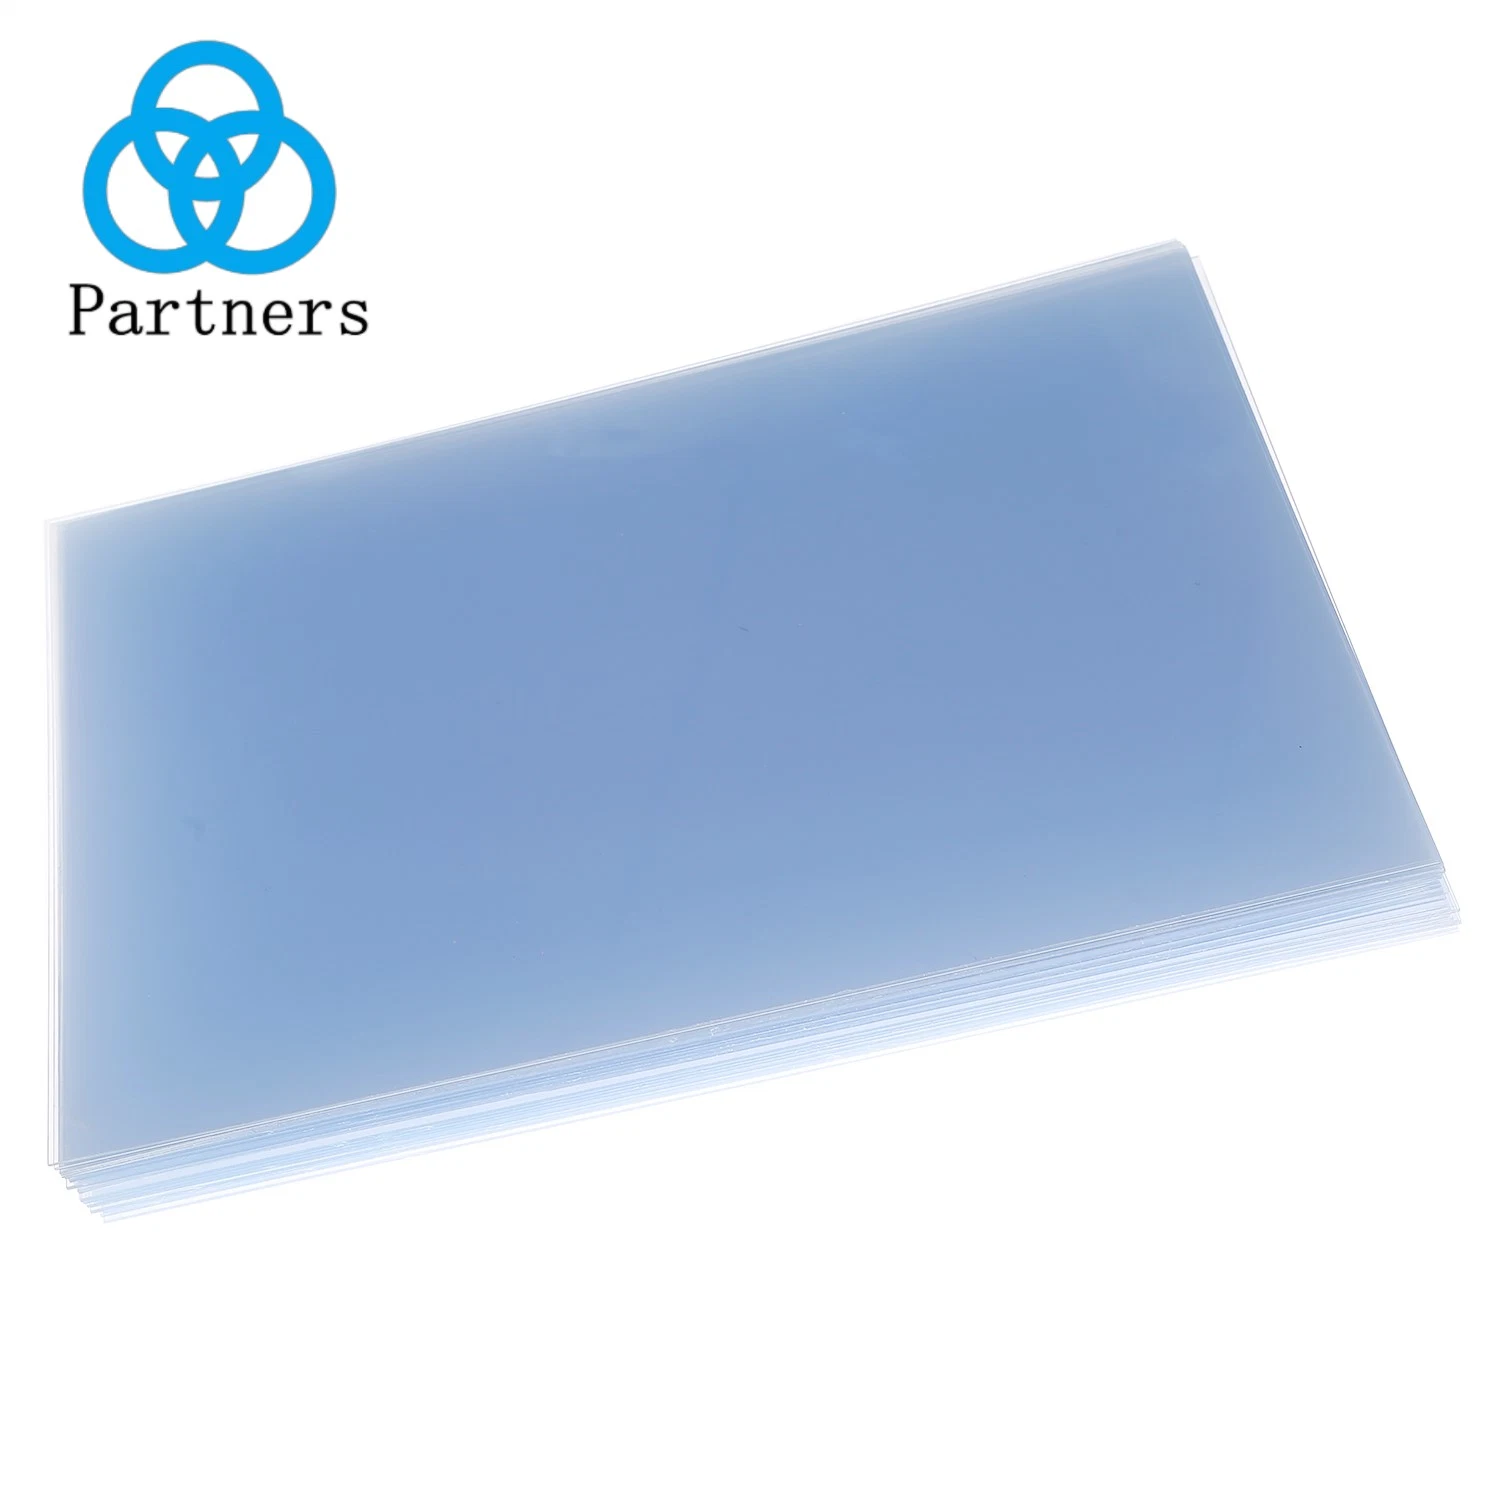 Película PVC transparente material de película PVC Folha de PP rígida transparente